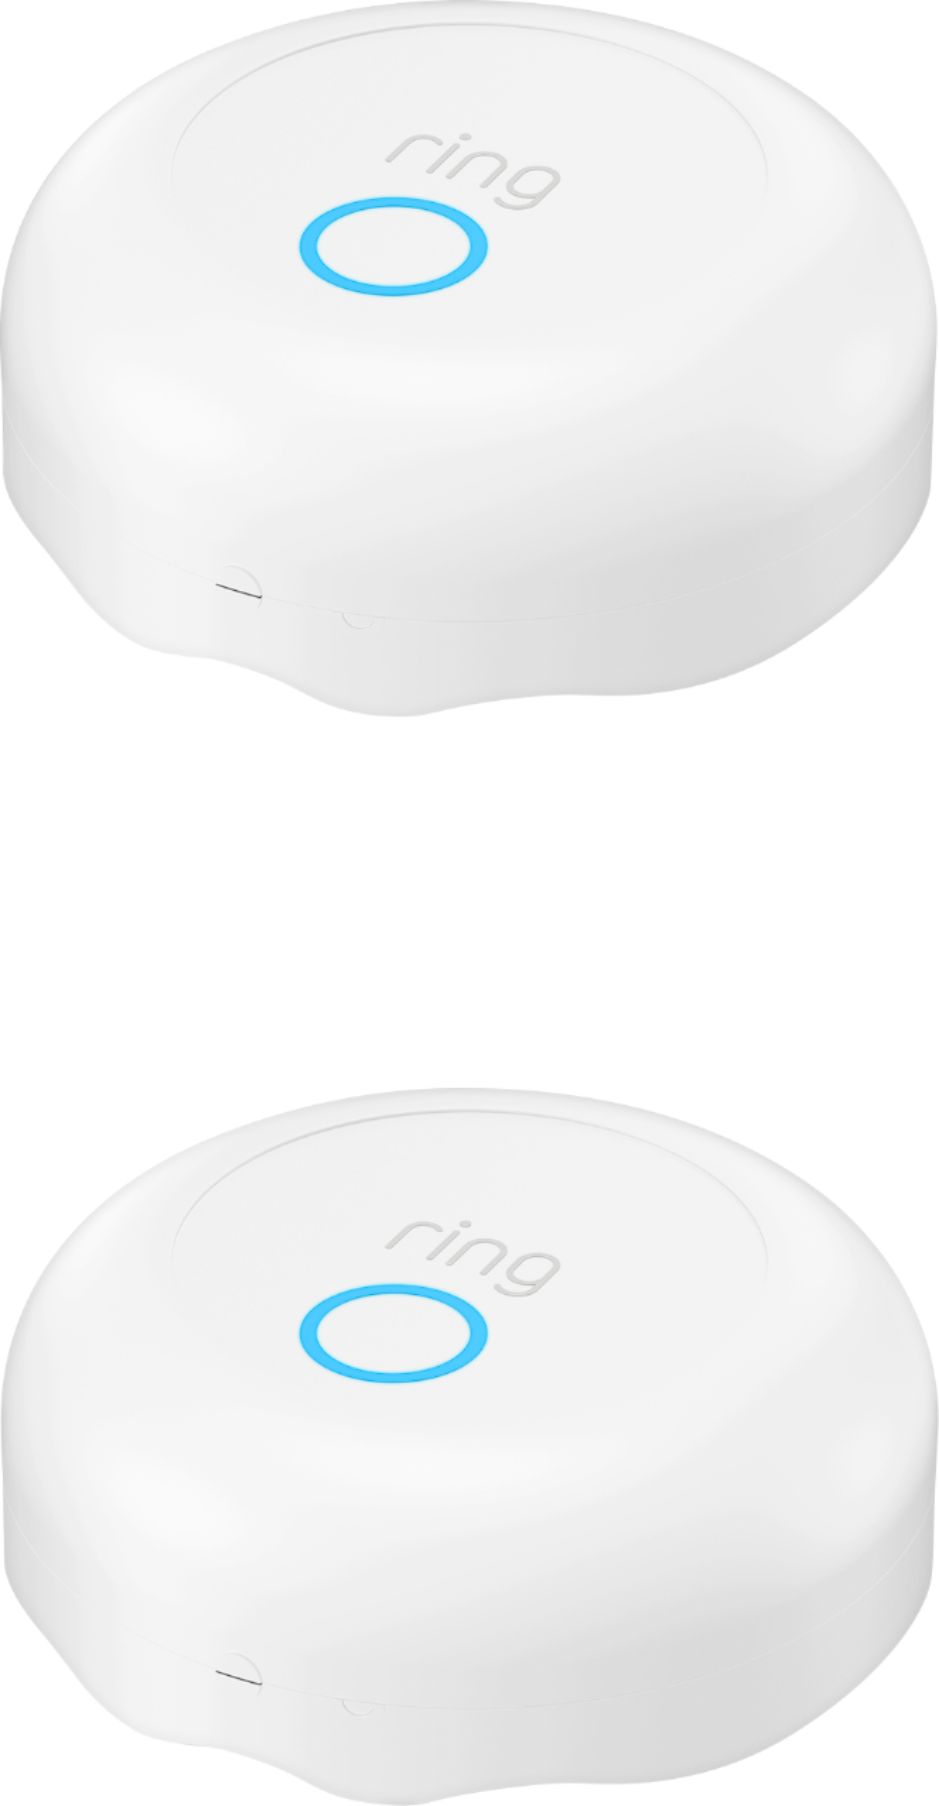 Ring Alarm Flood & Freeze Sensor (1-Pack) White  - Best Buy